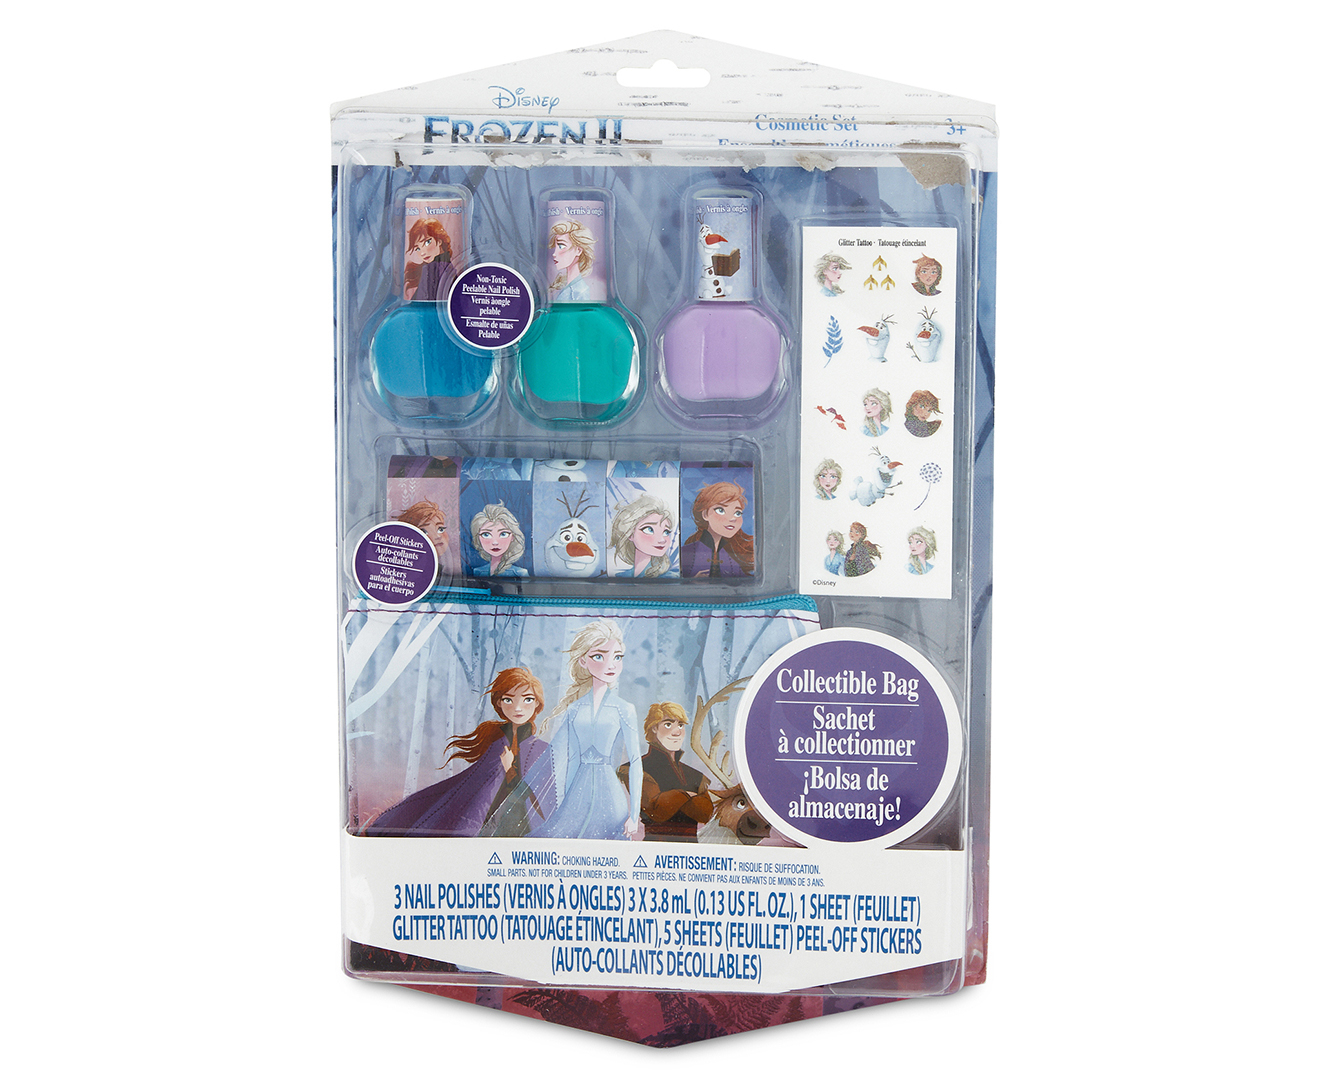 2. Disney Frozen Nail Polish Designs - wide 5